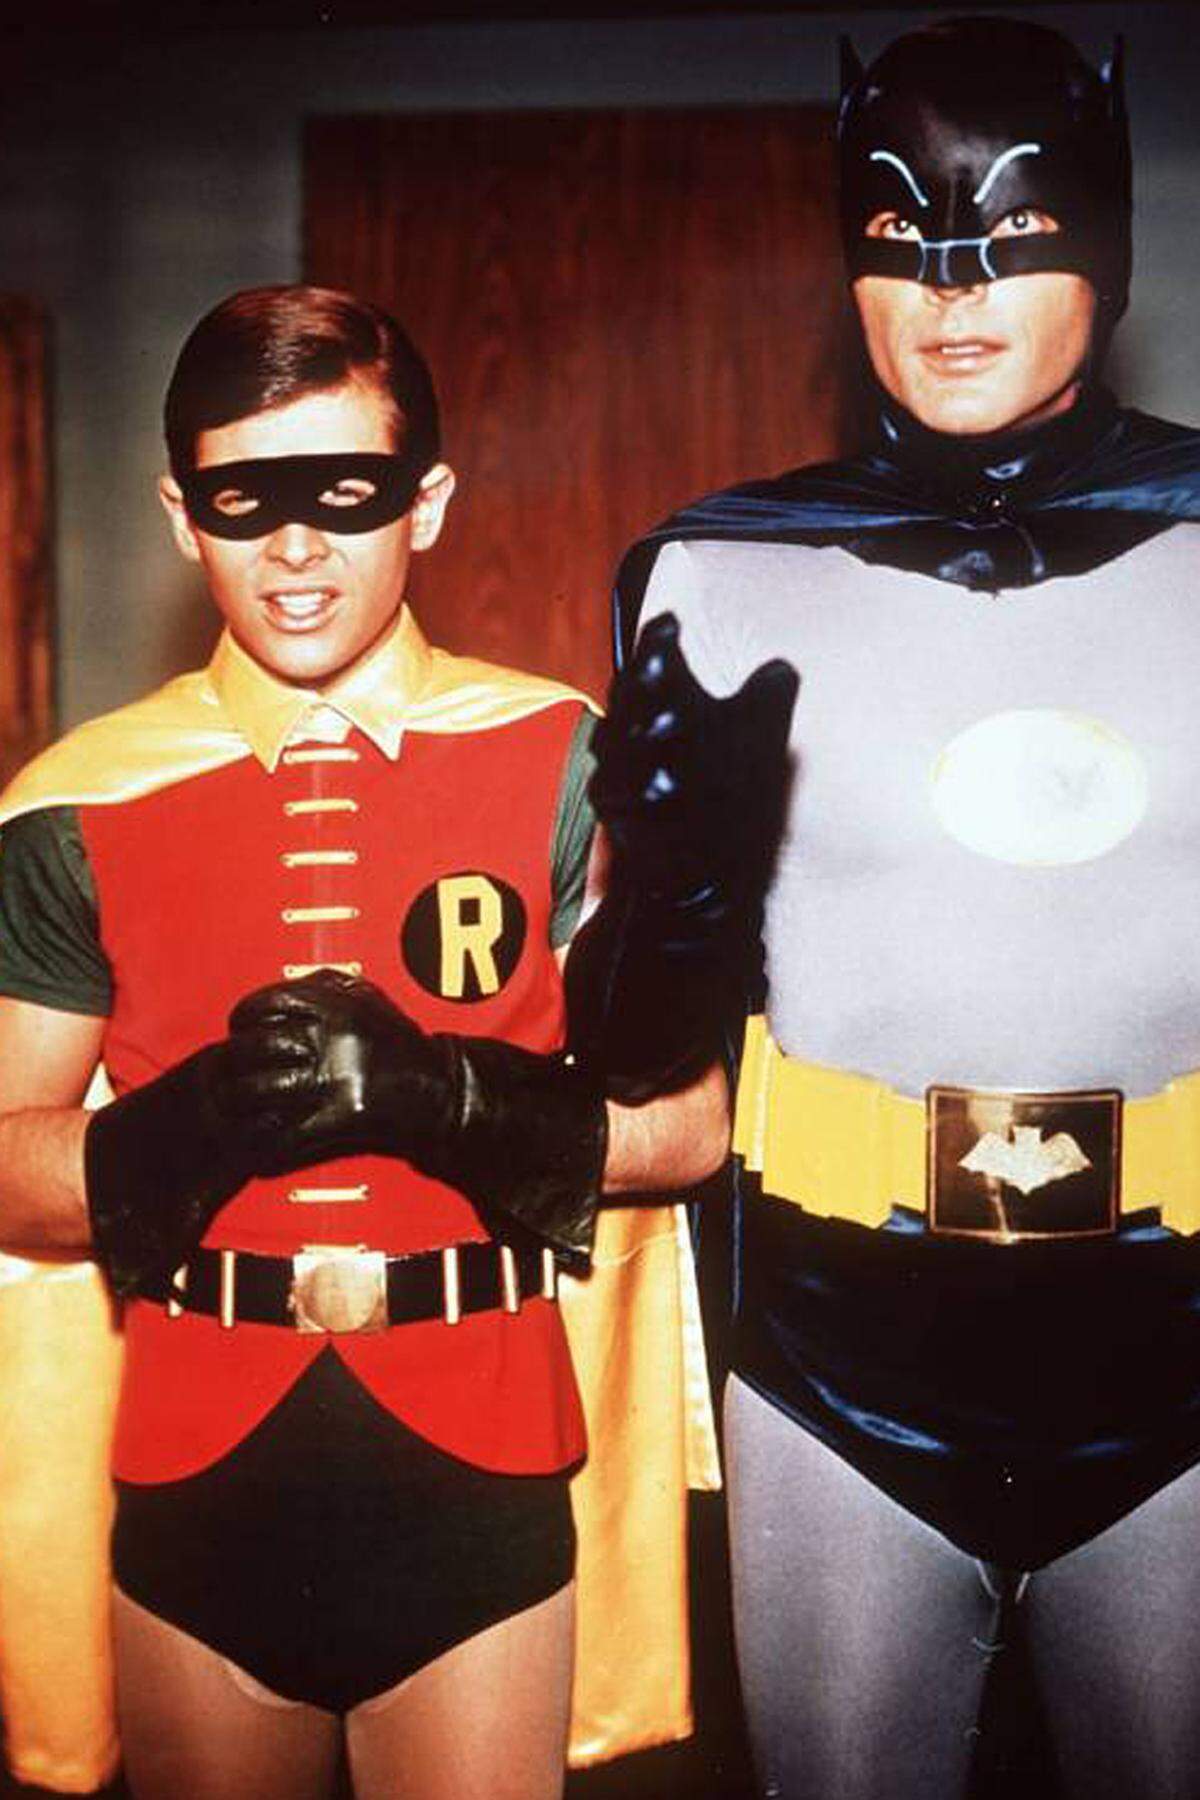 Zurück zum "Camp"-Aspekt der Serie: Die enge Beziehung zwischen Batman und Dick Grayson/Robin kann unterschiedlich interpretiert werden. Ist Bruce nun eine Vaterfigur für Dick (wie im Comic) oder sein "Lebensmensch"? Ist Batman hetero- oder bisexuell? Homosexualität wird höchstens angedeutet, aber nie explizit.